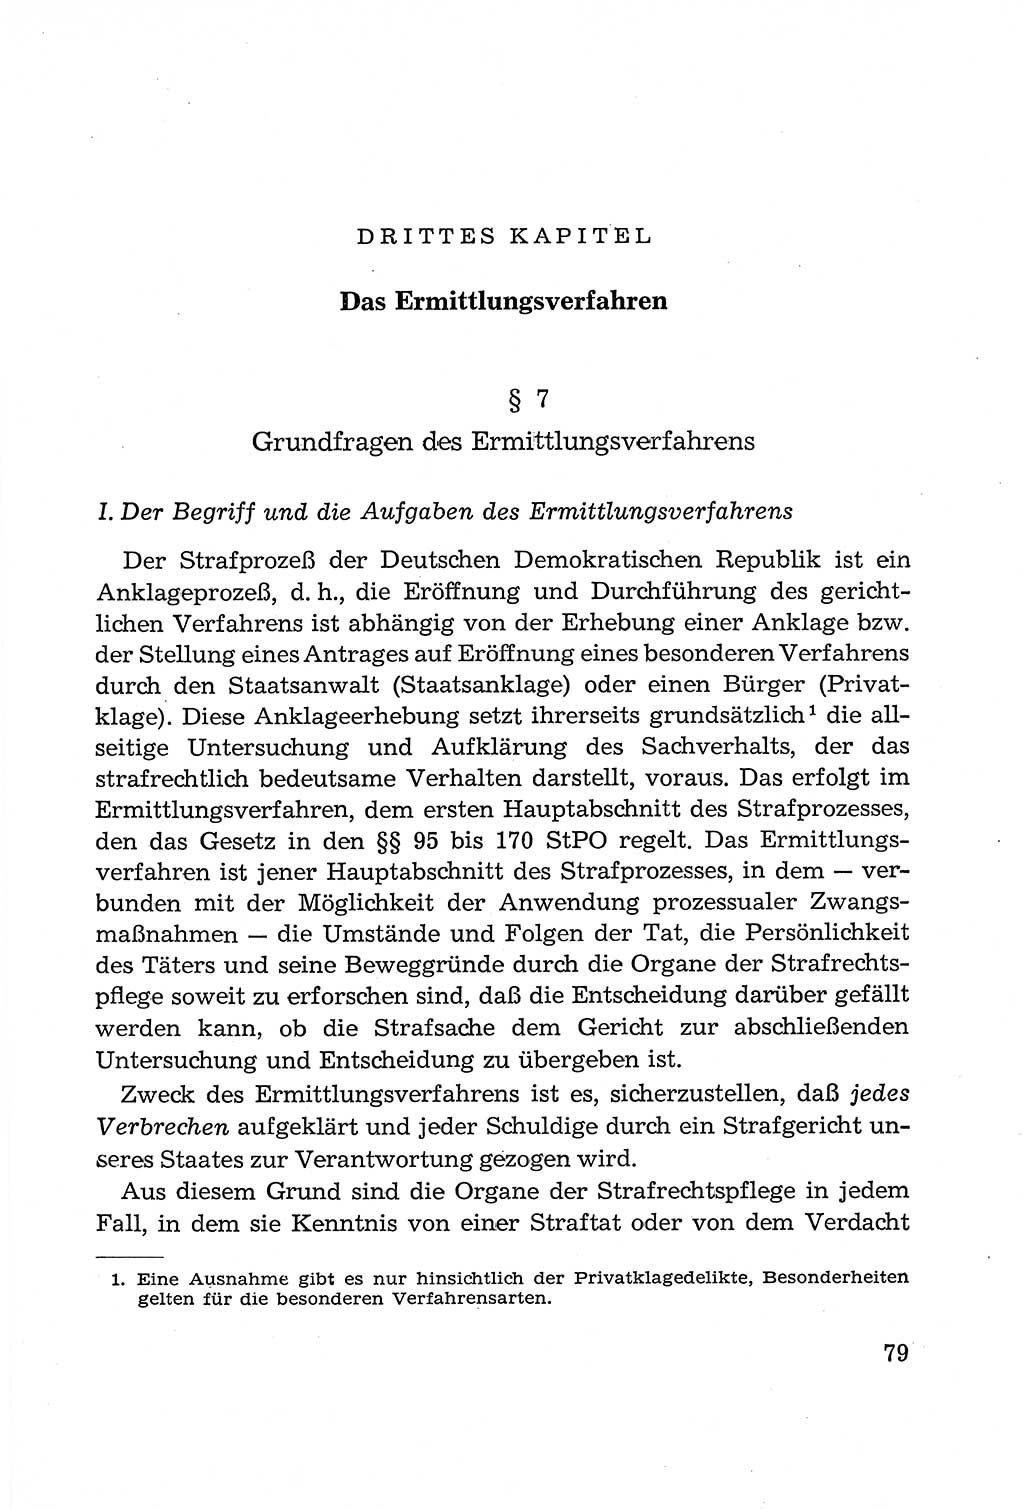 Leitfaden des Strafprozeßrechts der Deutschen Demokratischen Republik (DDR) 1959, Seite 79 (LF StPR DDR 1959, S. 79)